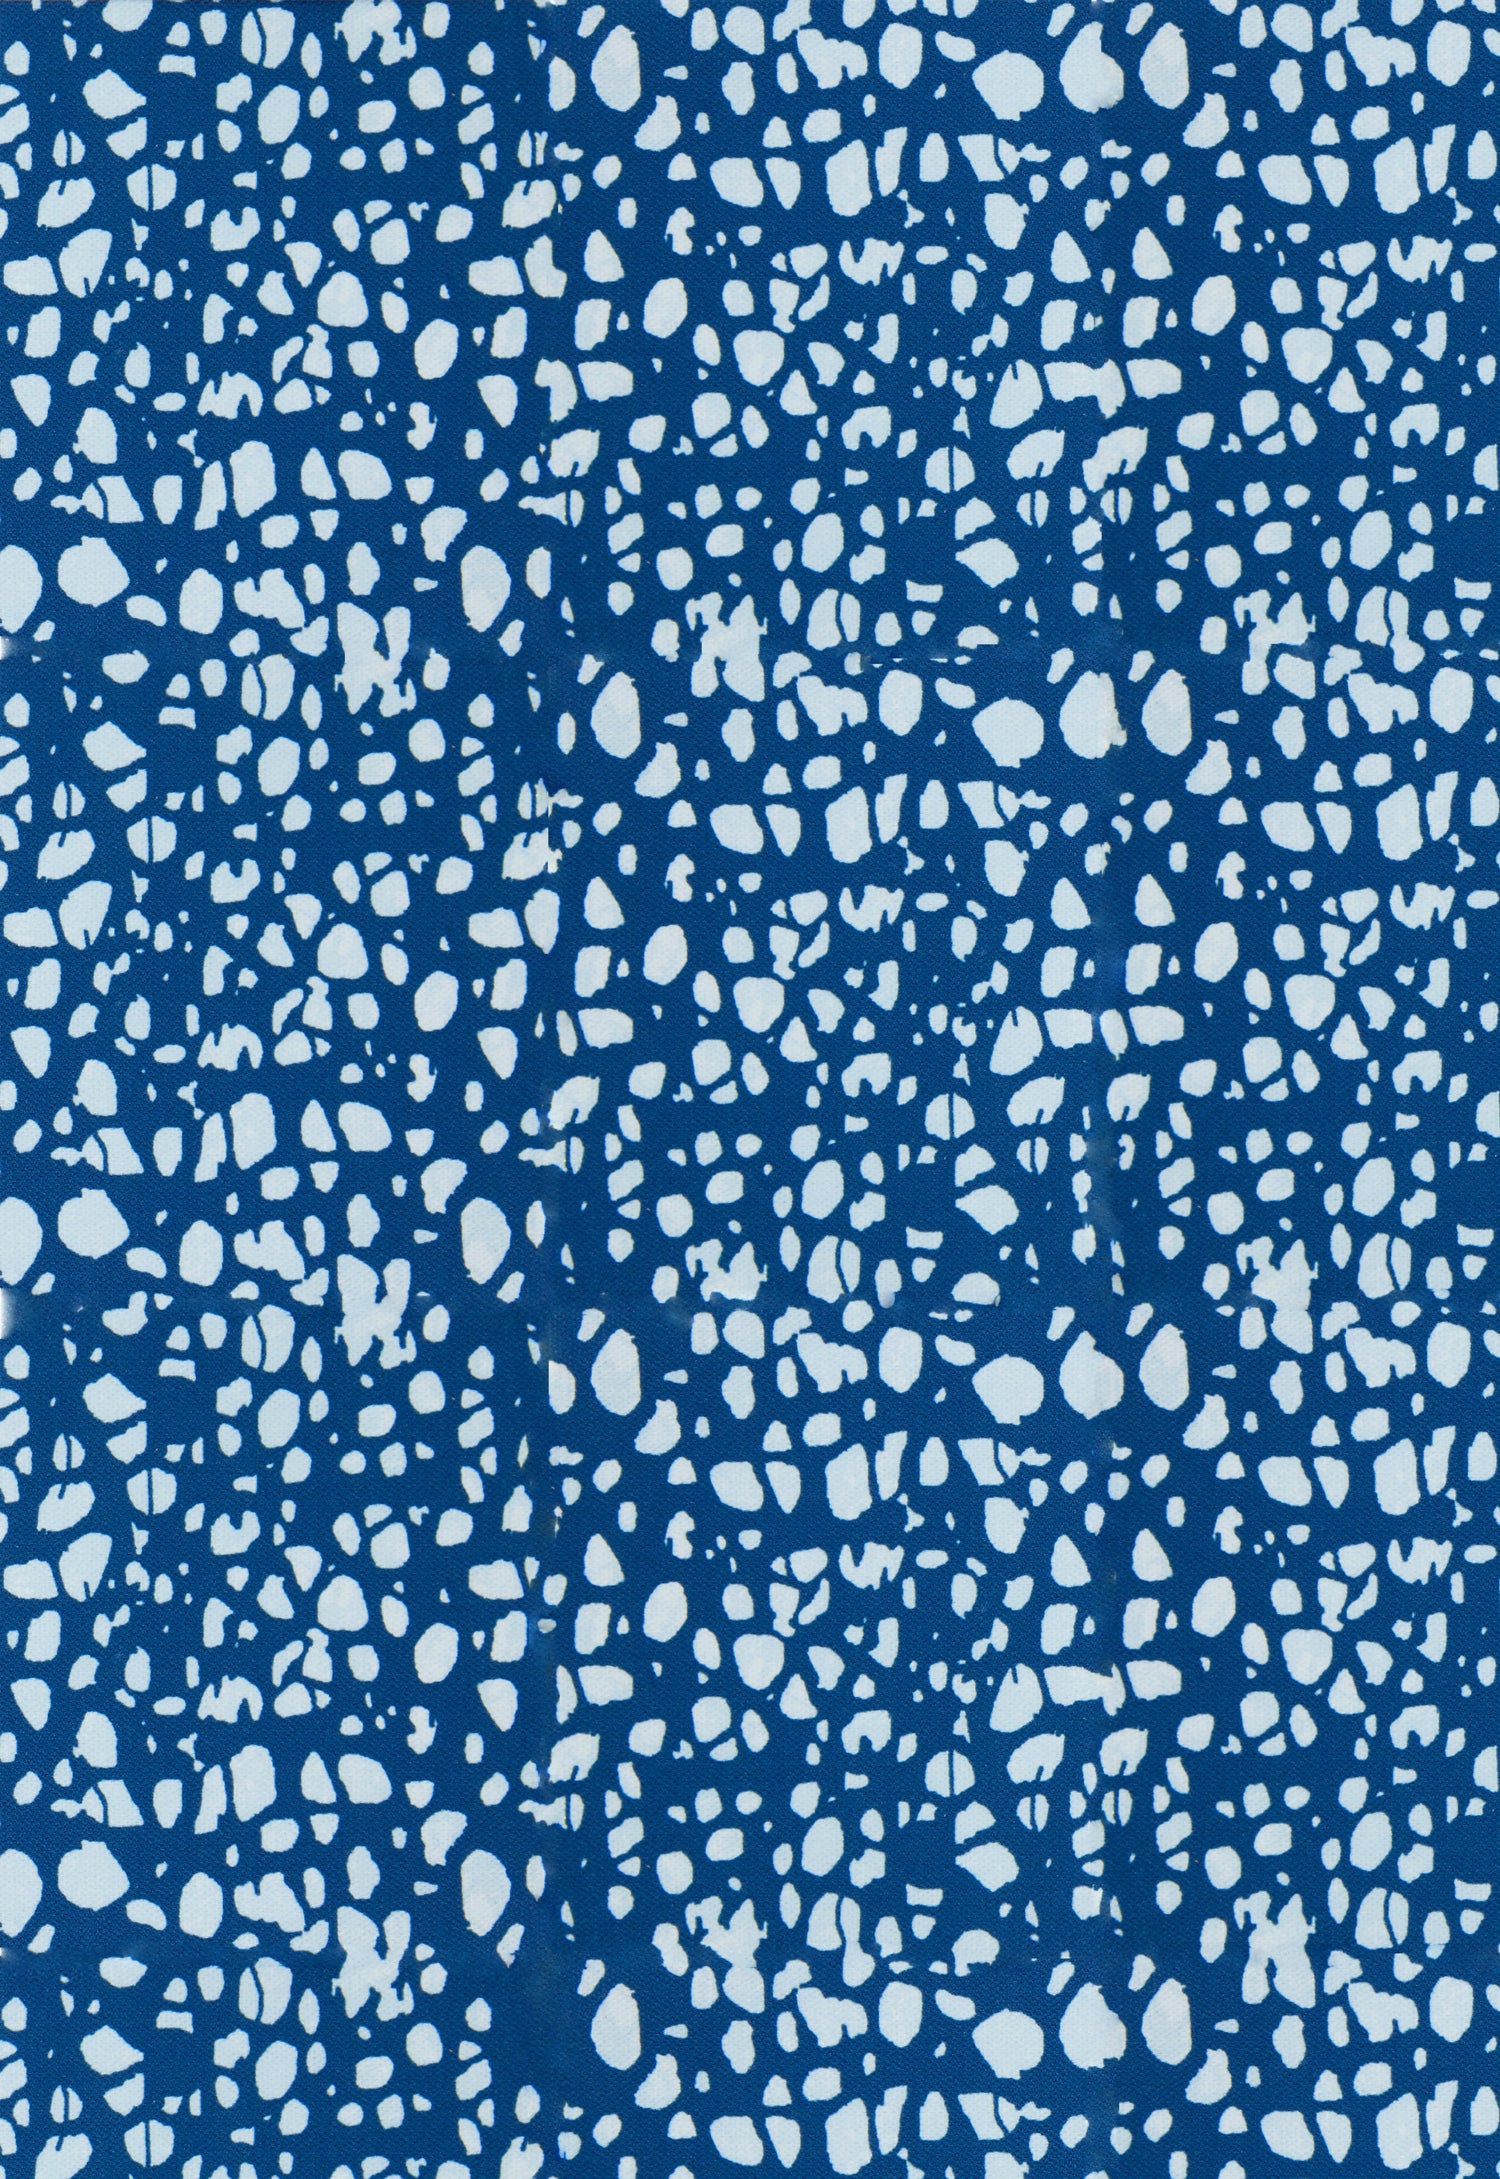 Detail of fabric in a batik splatter print in light blue on a navy field.